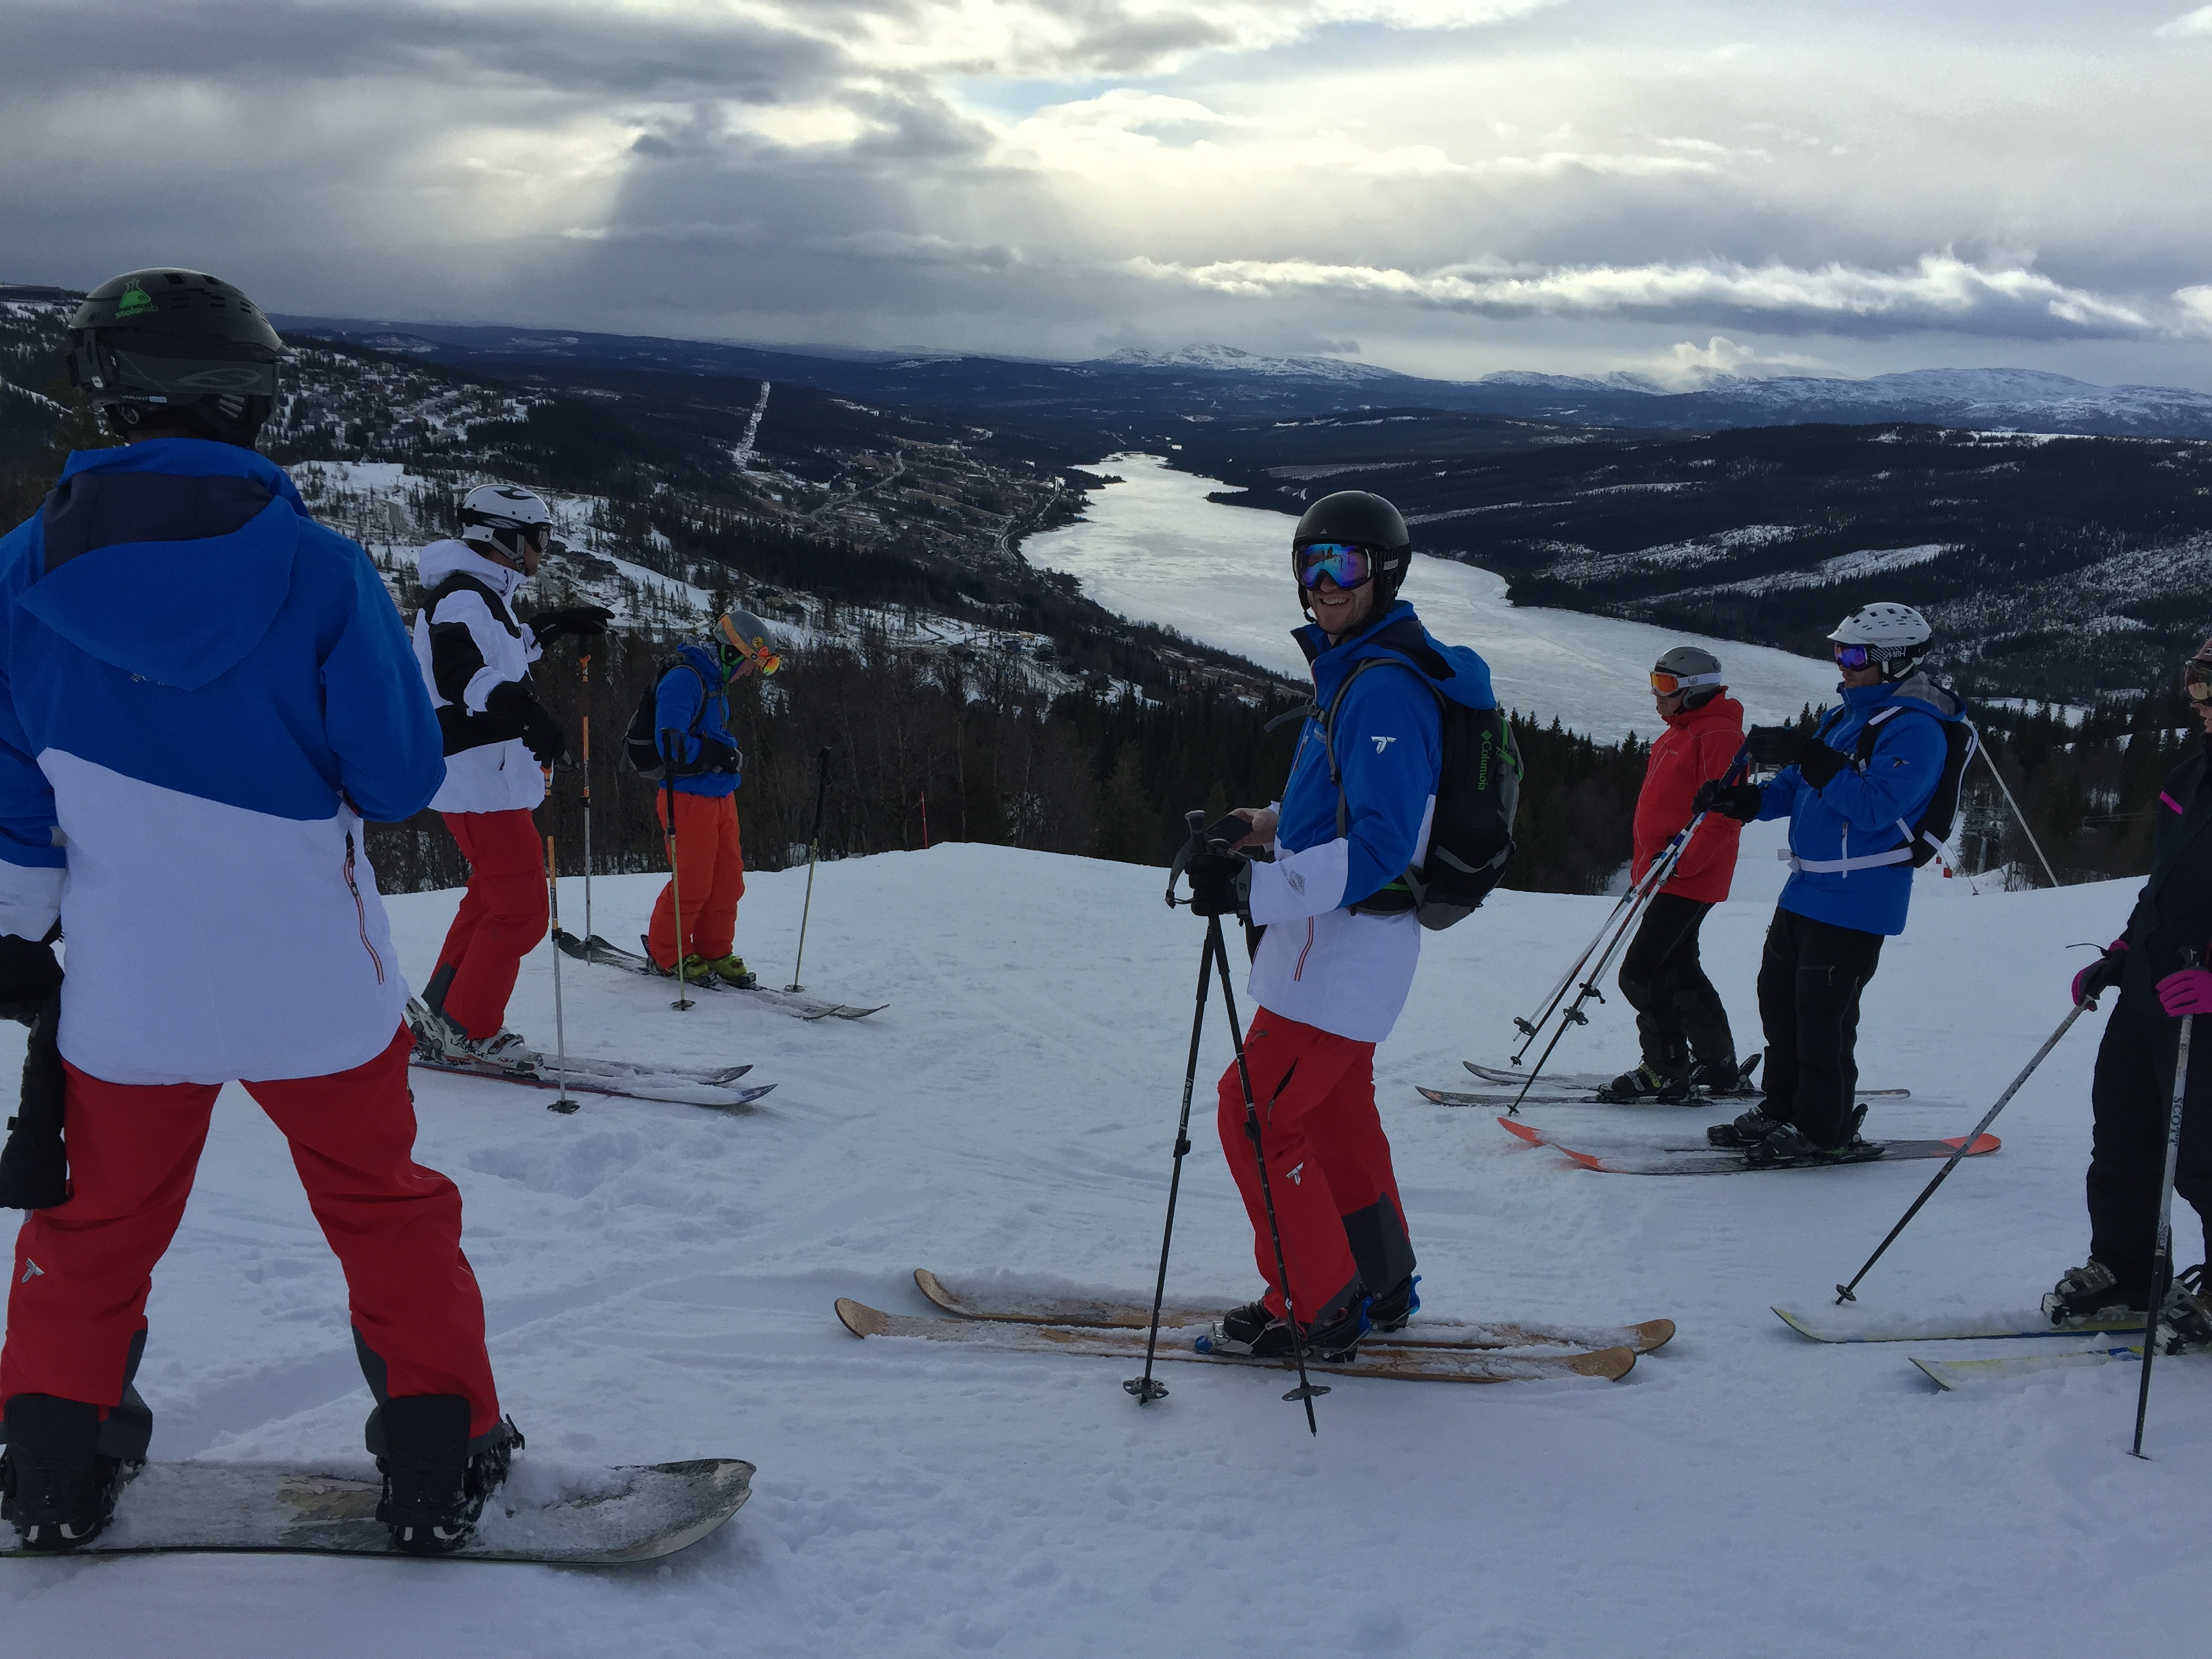 Skiing in Sweden